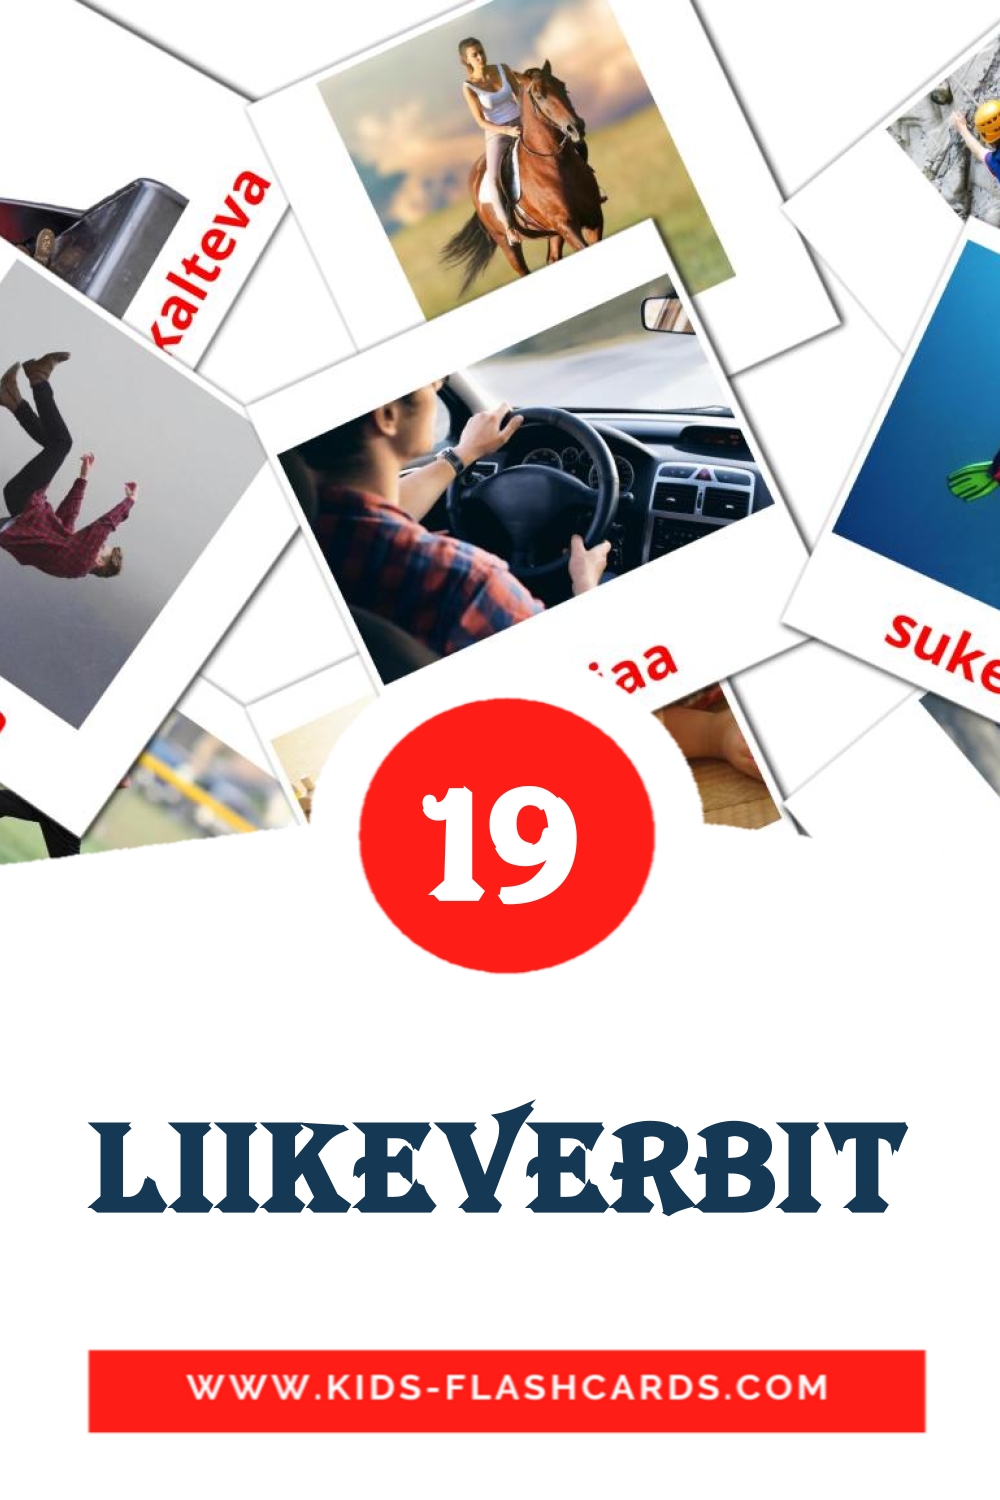 19 tarjetas didacticas de Liikeverbit para el jardín de infancia en finlandés